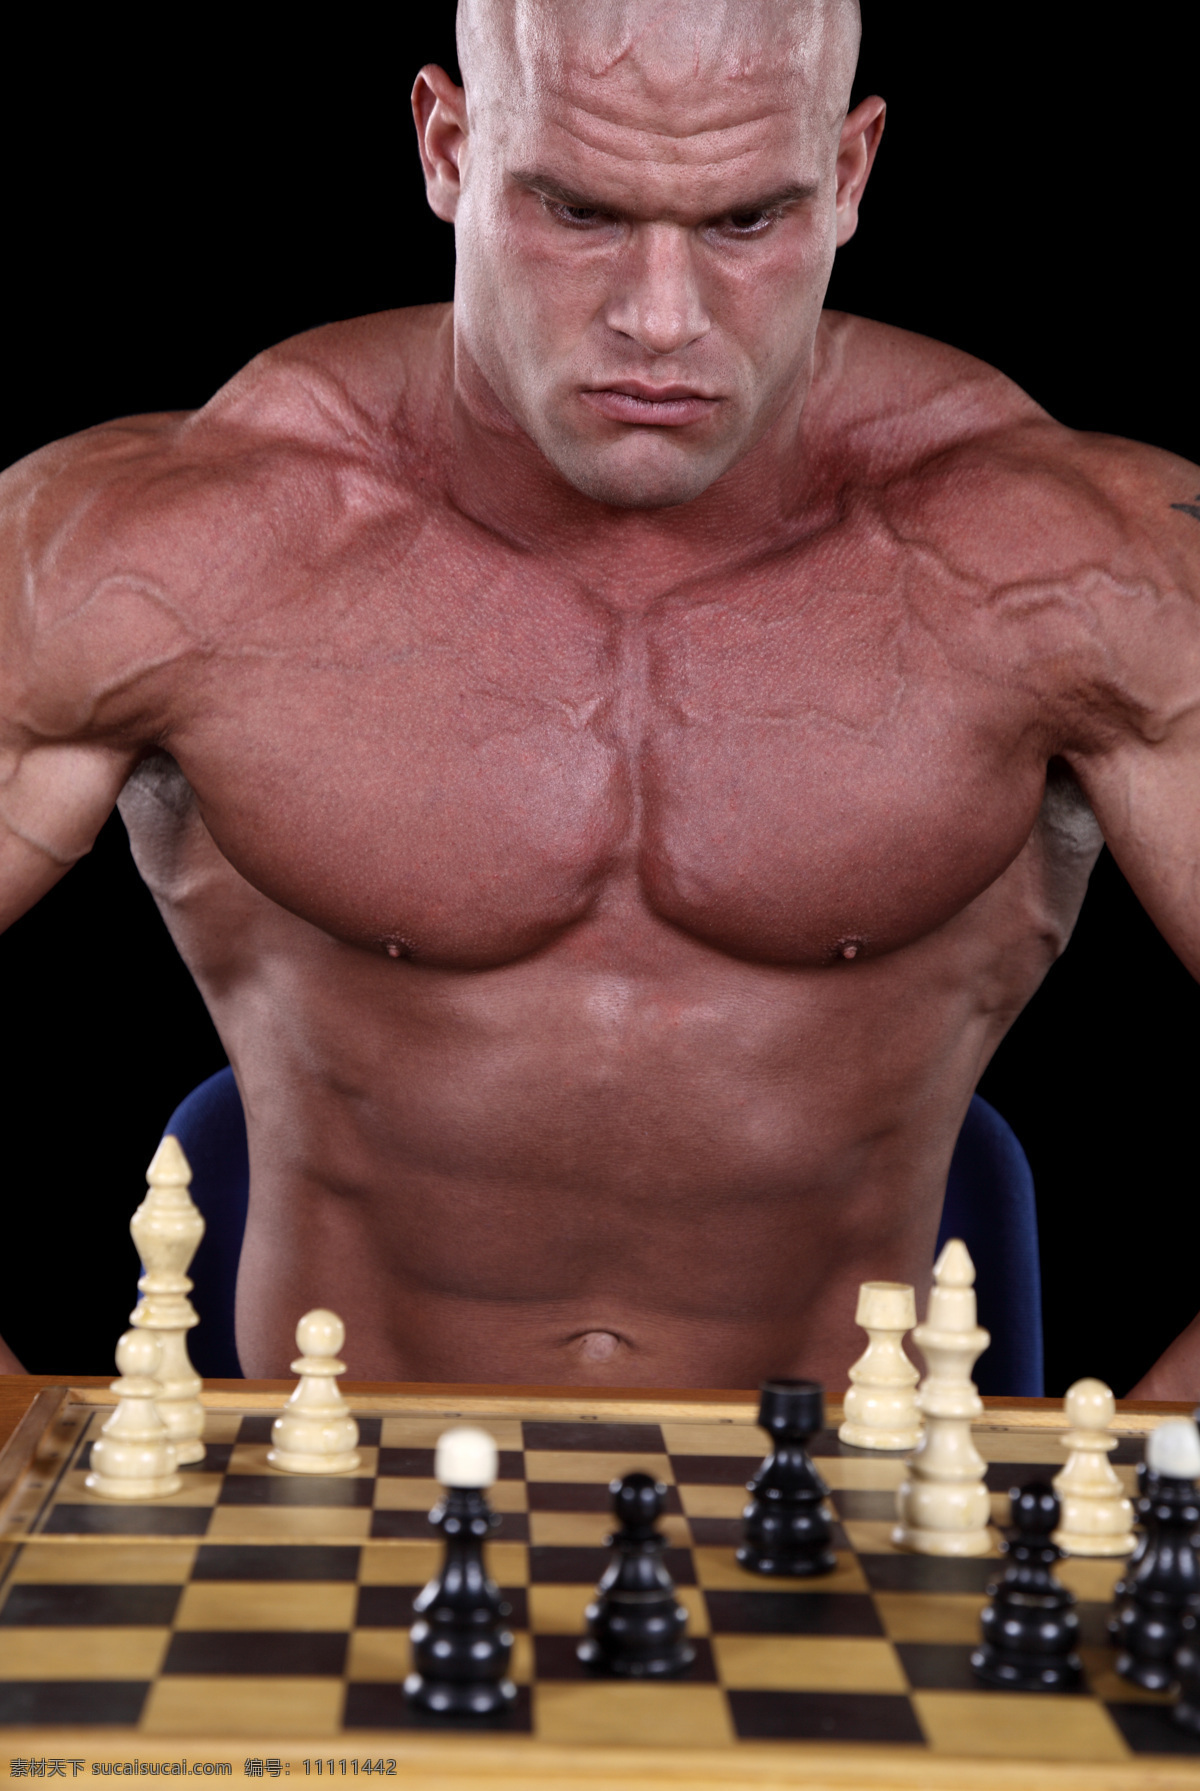 下 国际象棋 肌肉 男 外国男性 健美男人 下棋 运动员 健美身材 健身 健康 健壮 强壮 肌肉男 猛男 魅力男人 摄影图 男人图片 人物图片